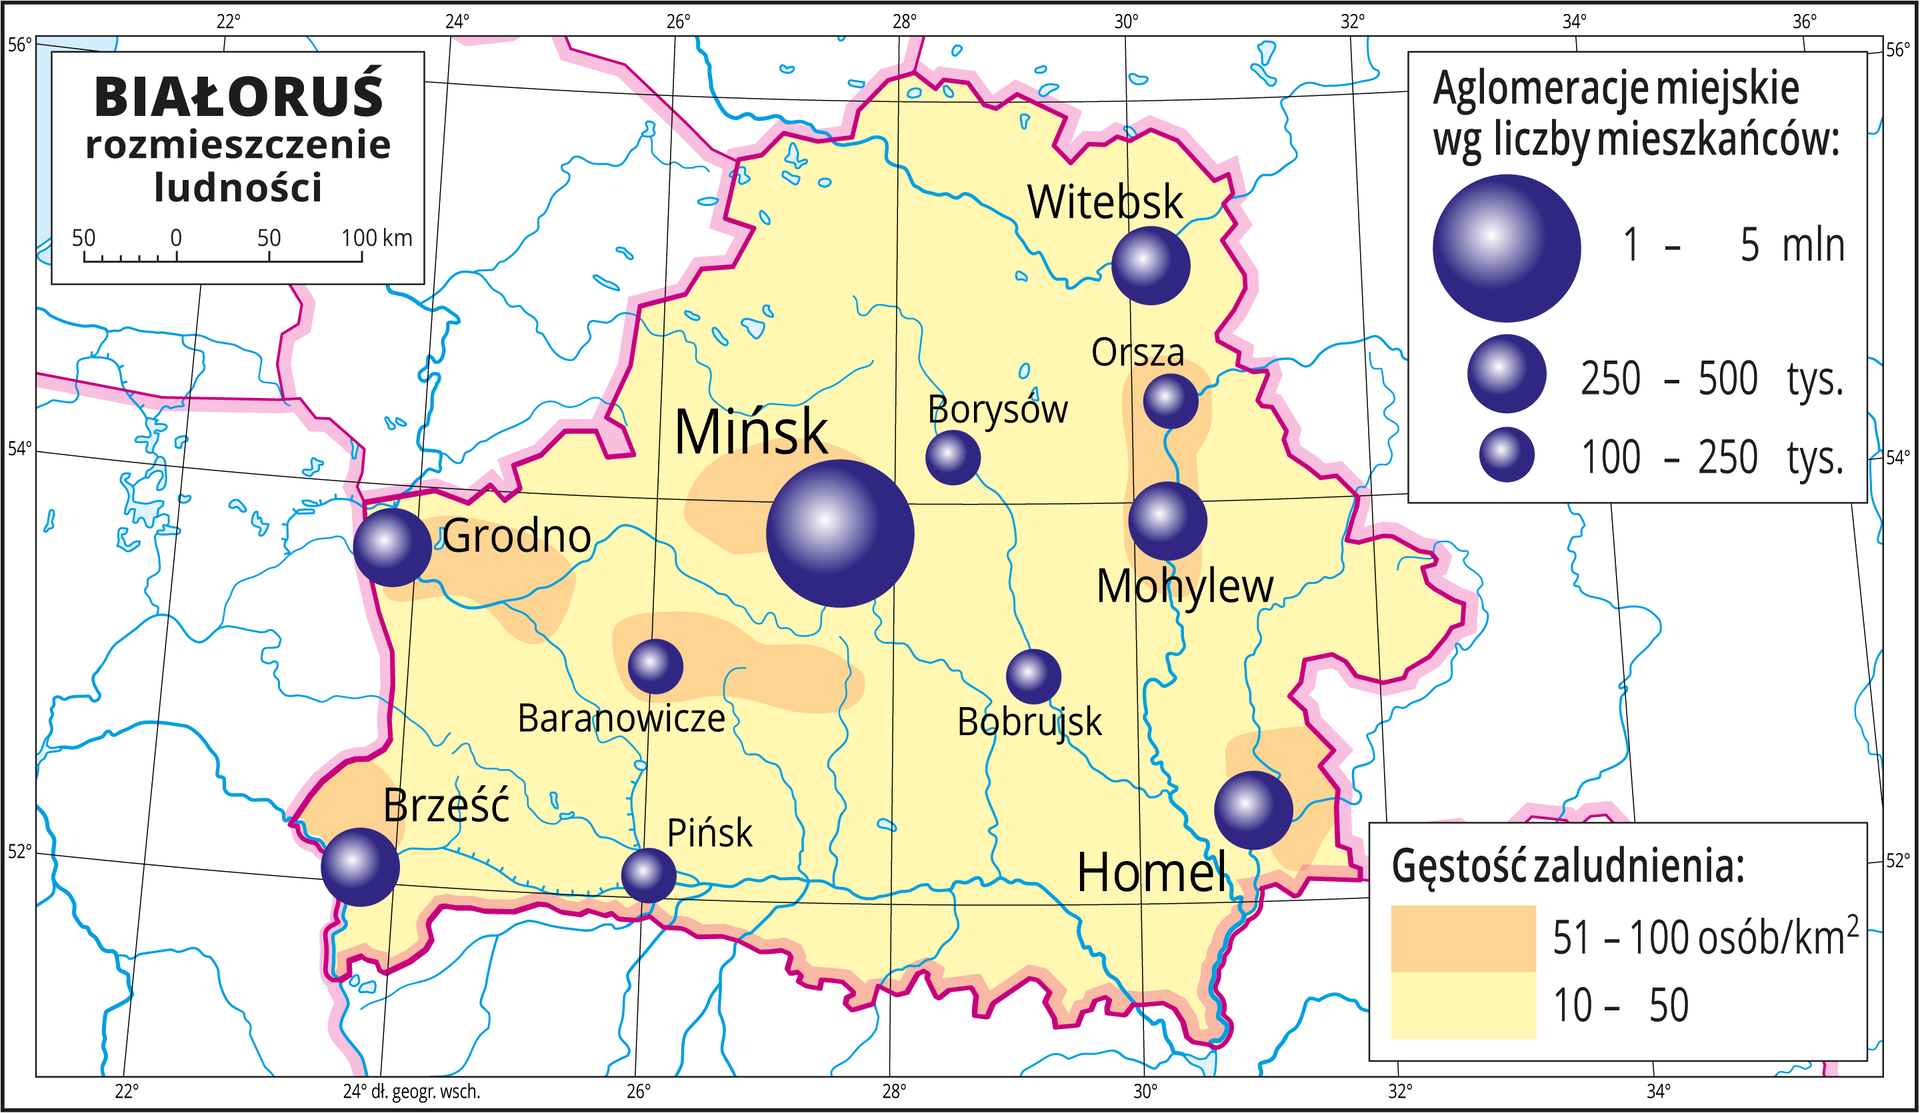 Ilustracja przedstawia mapę Białorusi. Na mapie przedstawiono rozmieszczenie ludności. Tło w kolorze żółtym oznacza gęstość zaludnienia od dziesięciu do pięćdziesięciu osób na jeden kilometr kwadratowy. W pobliżu miast pomarańczowe plamy oznaczające obszary o gęstości zaludnienia od pięćdziesięciu jeden do stu osób na jeden kilometr kwadratowy. Na mapie różnej wielkości sygnatury (koła) obrazujące aglomeracje miejskie wg liczby mieszkańców: Mińsk – od jednego miliona do pięciu milionów mieszkańców. Homel, Mohylew, Witebsk, Brześć, Grodno od dwustu pięćdziesięciu do pięciuset tysięcy mieszkańców. Kilka mniejszych sygnatur poniżej dwustu pięćdziesięciu tysięcy mieszkańców. Mapa zawiera południki i równoleżniki, dookoła mapy w białej ramce opisano współrzędne geograficzne co dwa stopnie.